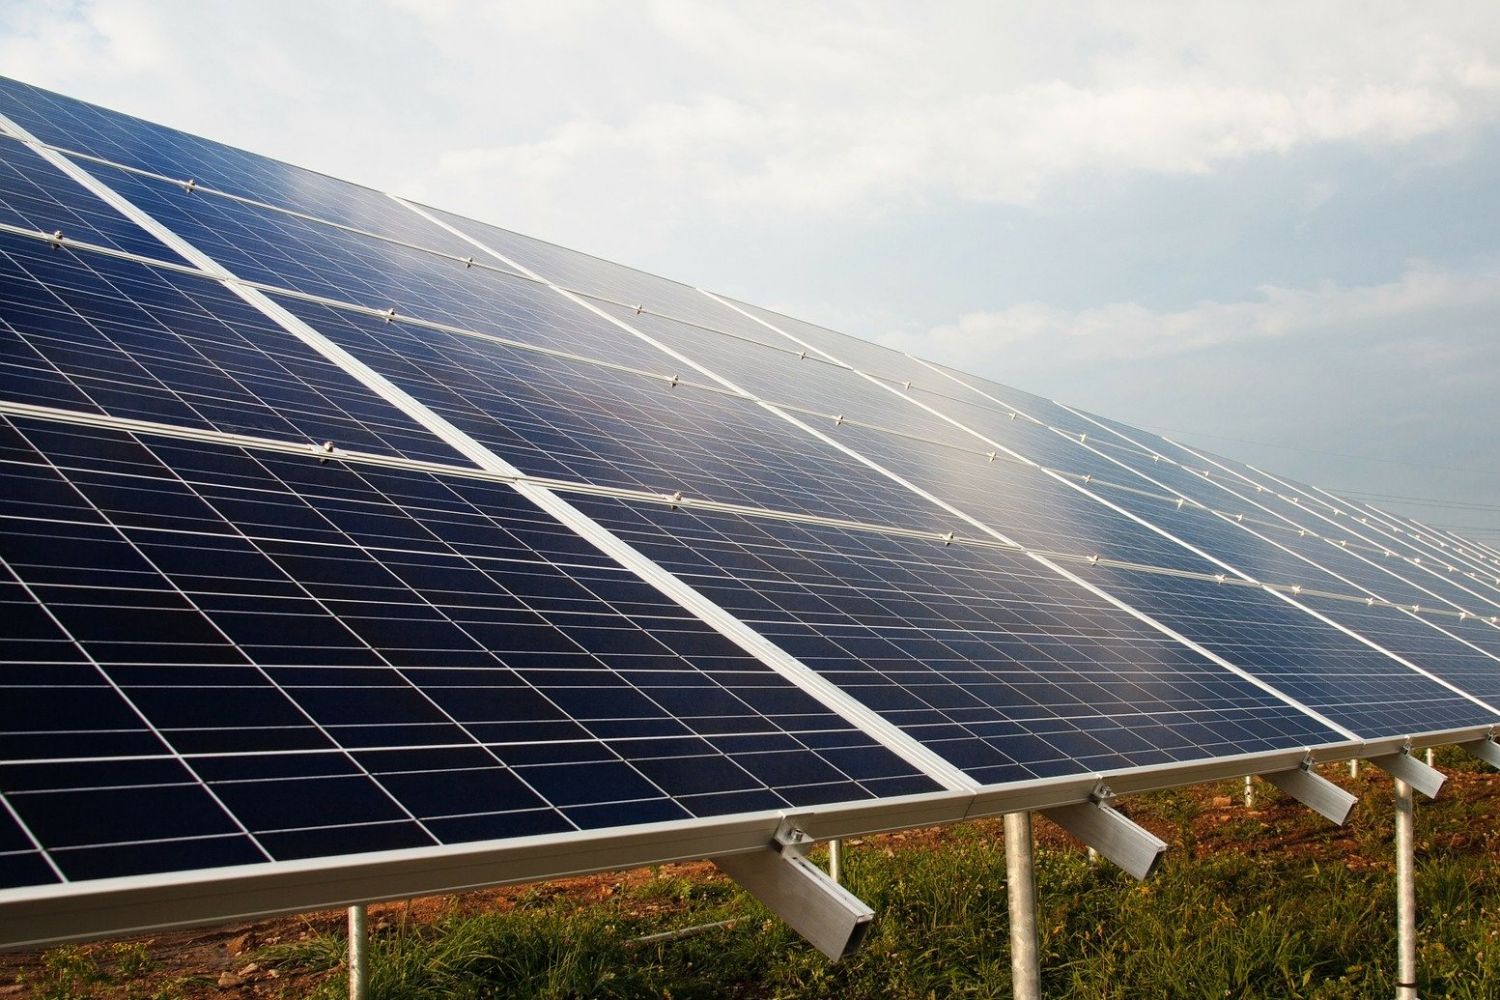 PADCON geht Partnerschaft mit deutschem Solarspezialisten ein